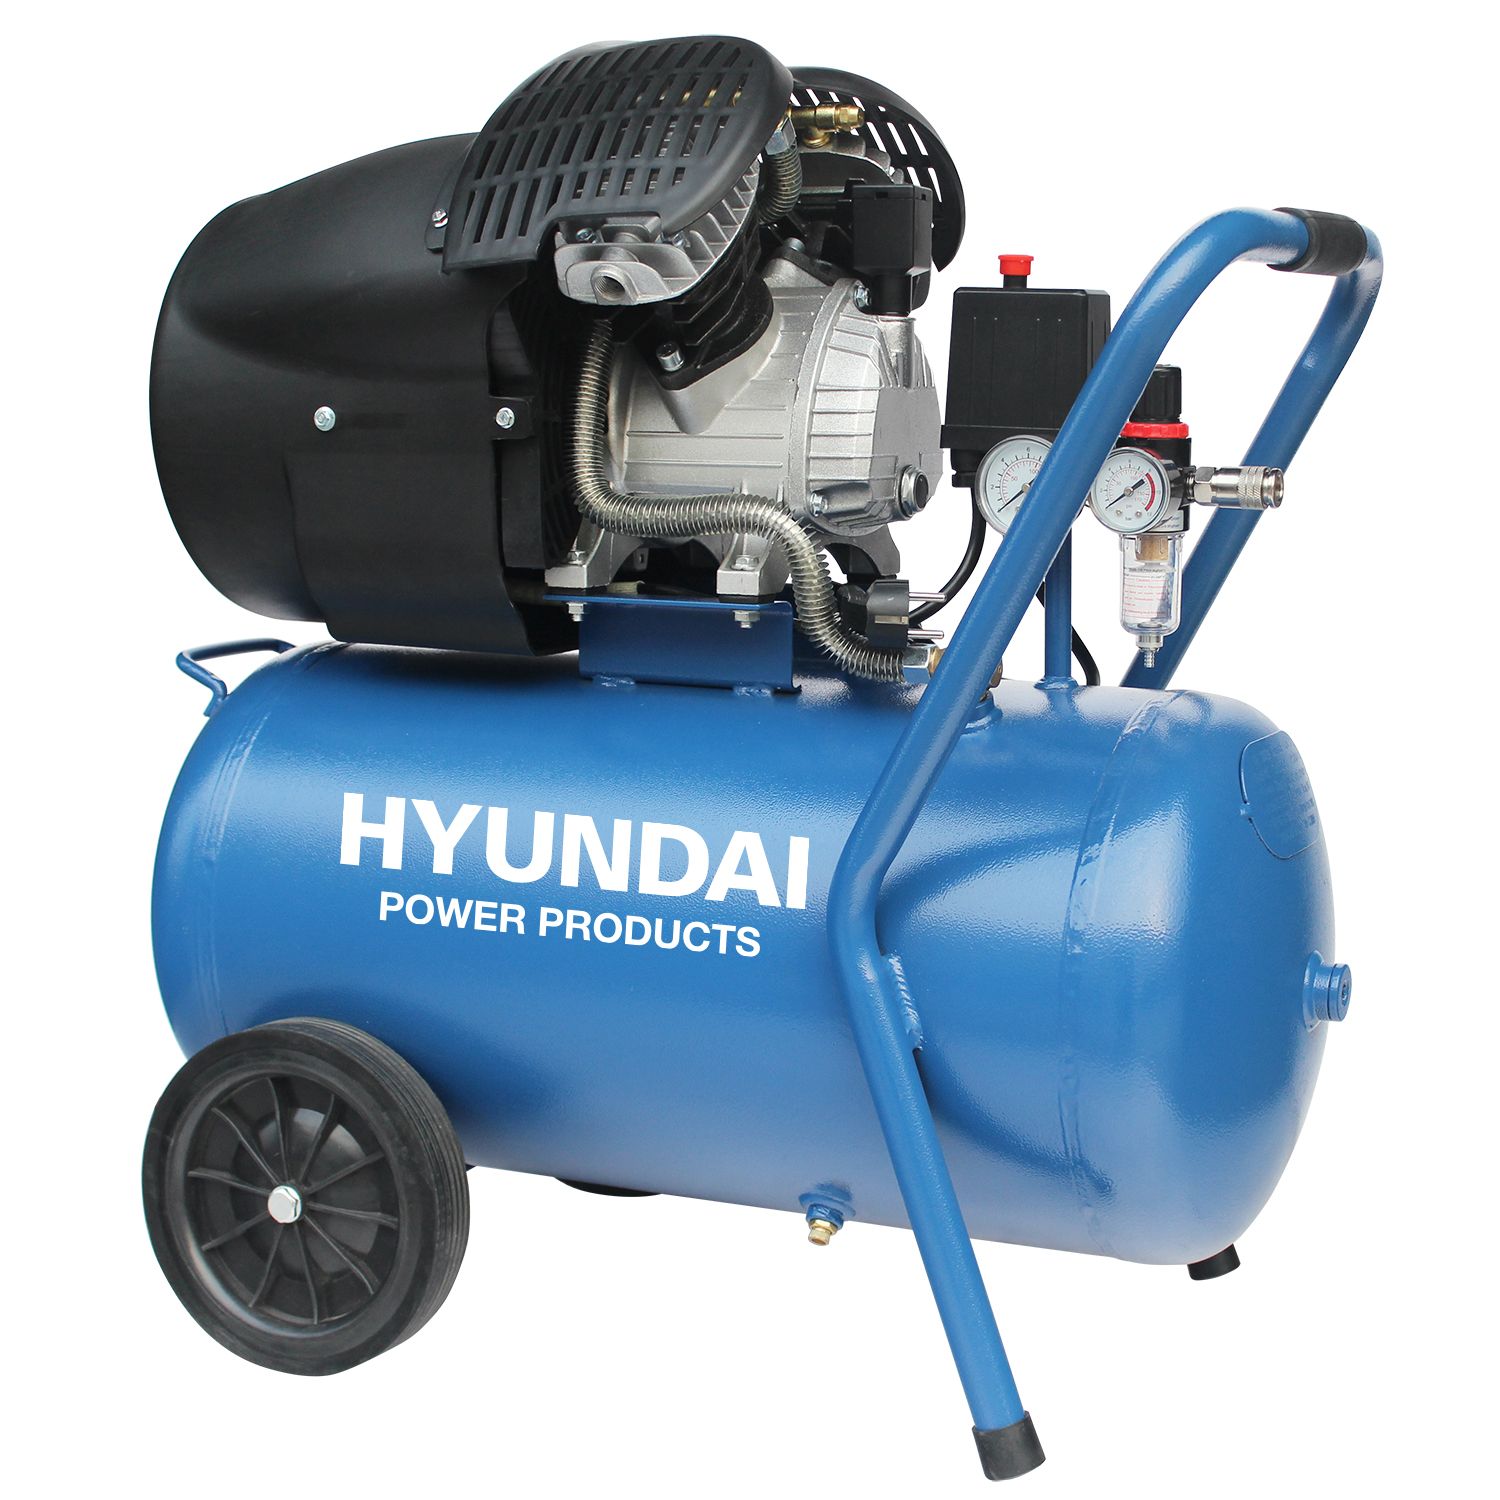 Hyundai compressor 50 L 8 bar 3 pk